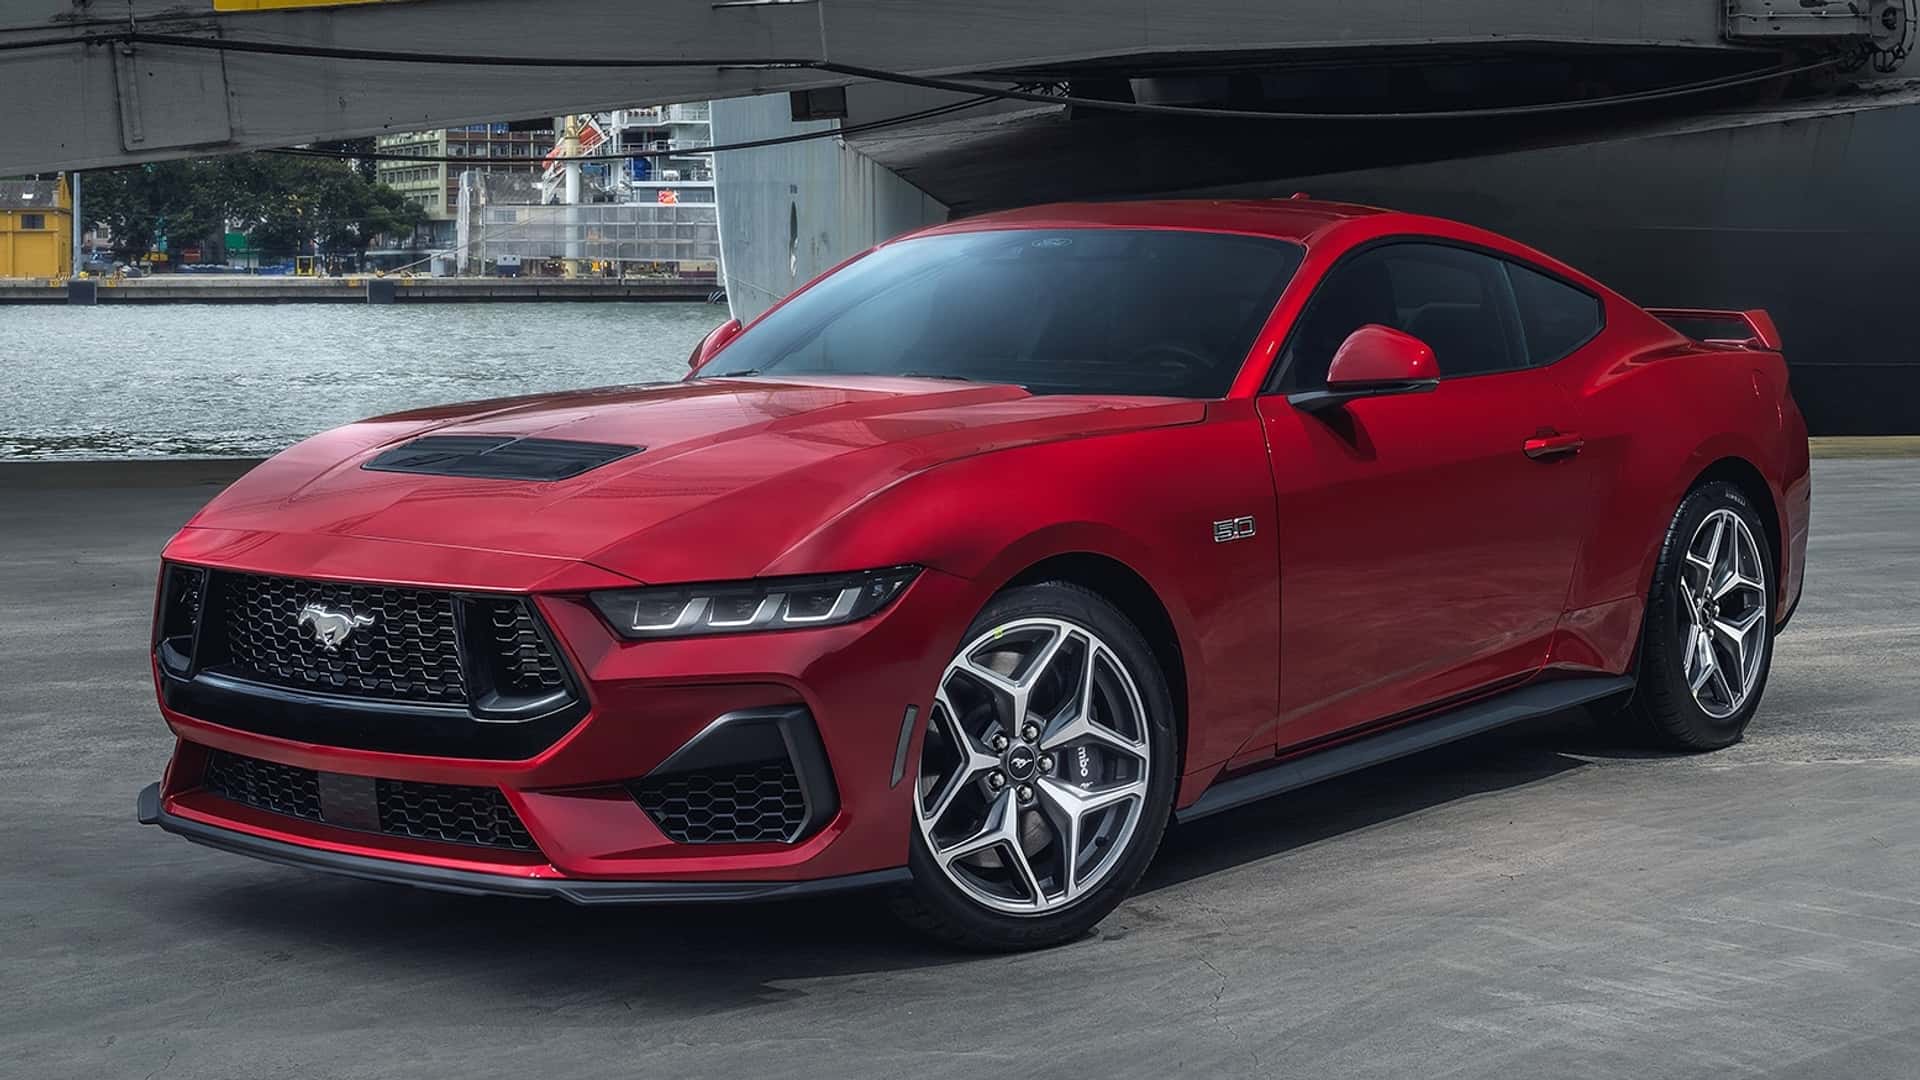 Ford confirma nova geração do Mustang com V8 a gasolina